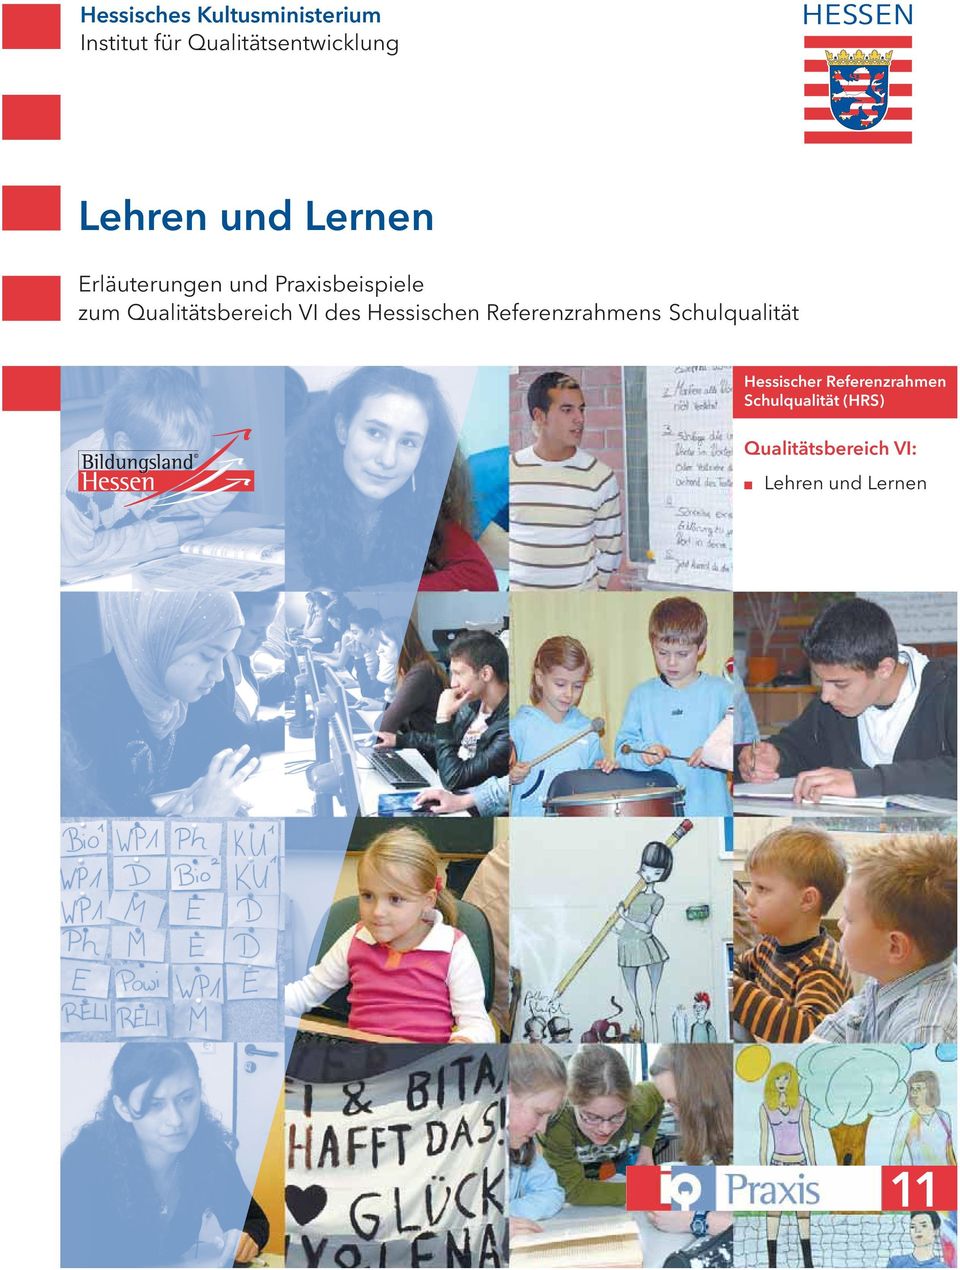 Qualitätsbereich VI des Hessischen Referenzrahmens Schulqualität